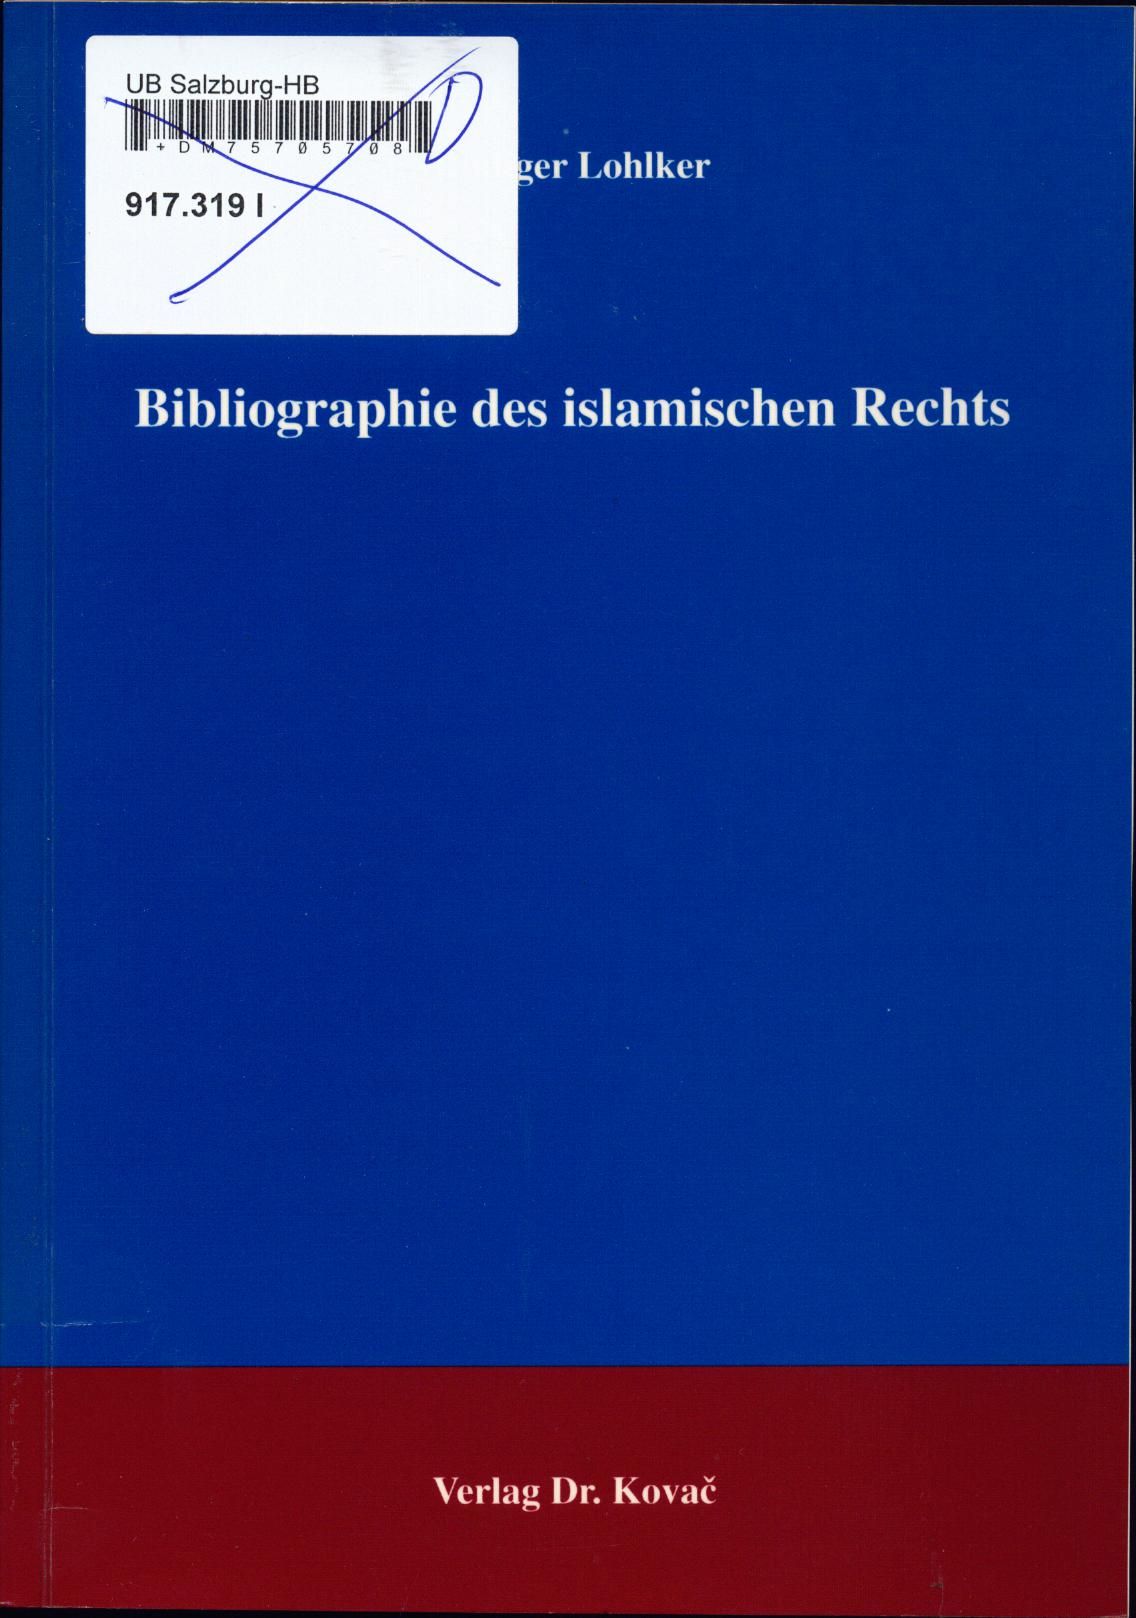 Bibliographie des islamischen Rechts - Lohlker, Rüdiger